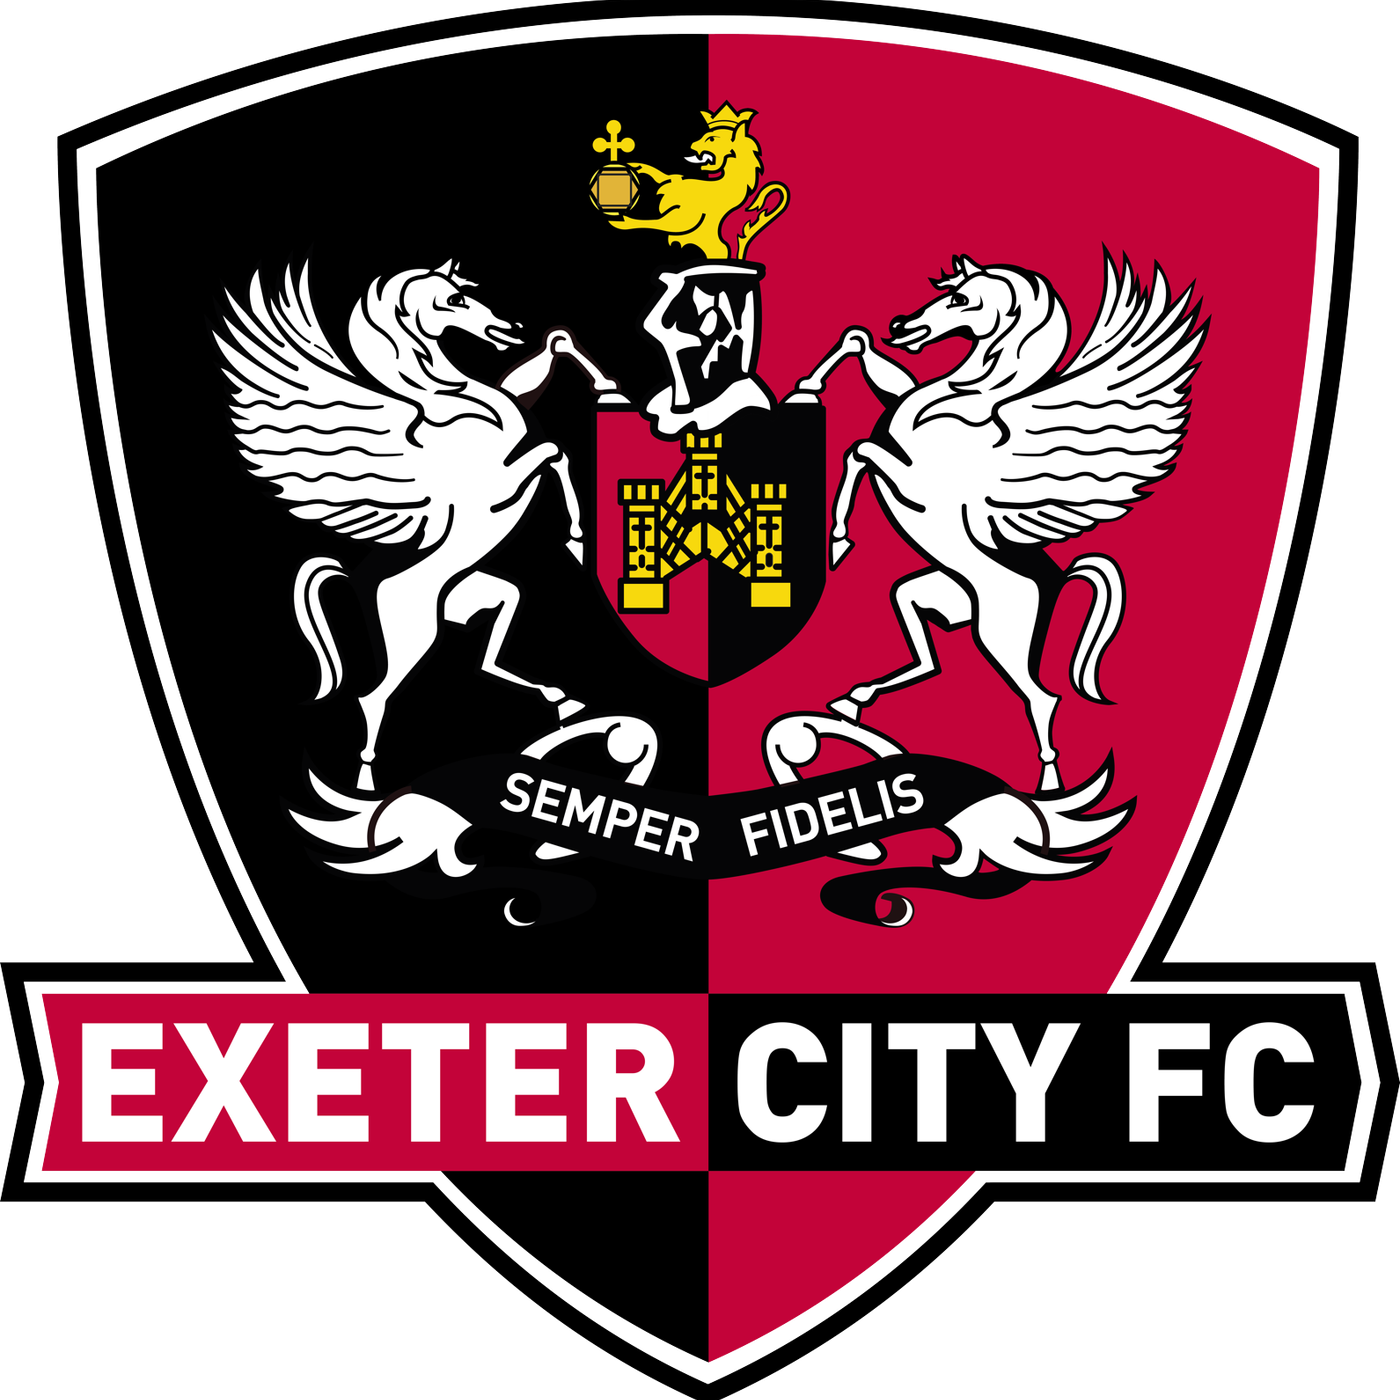 ExeterCityFC